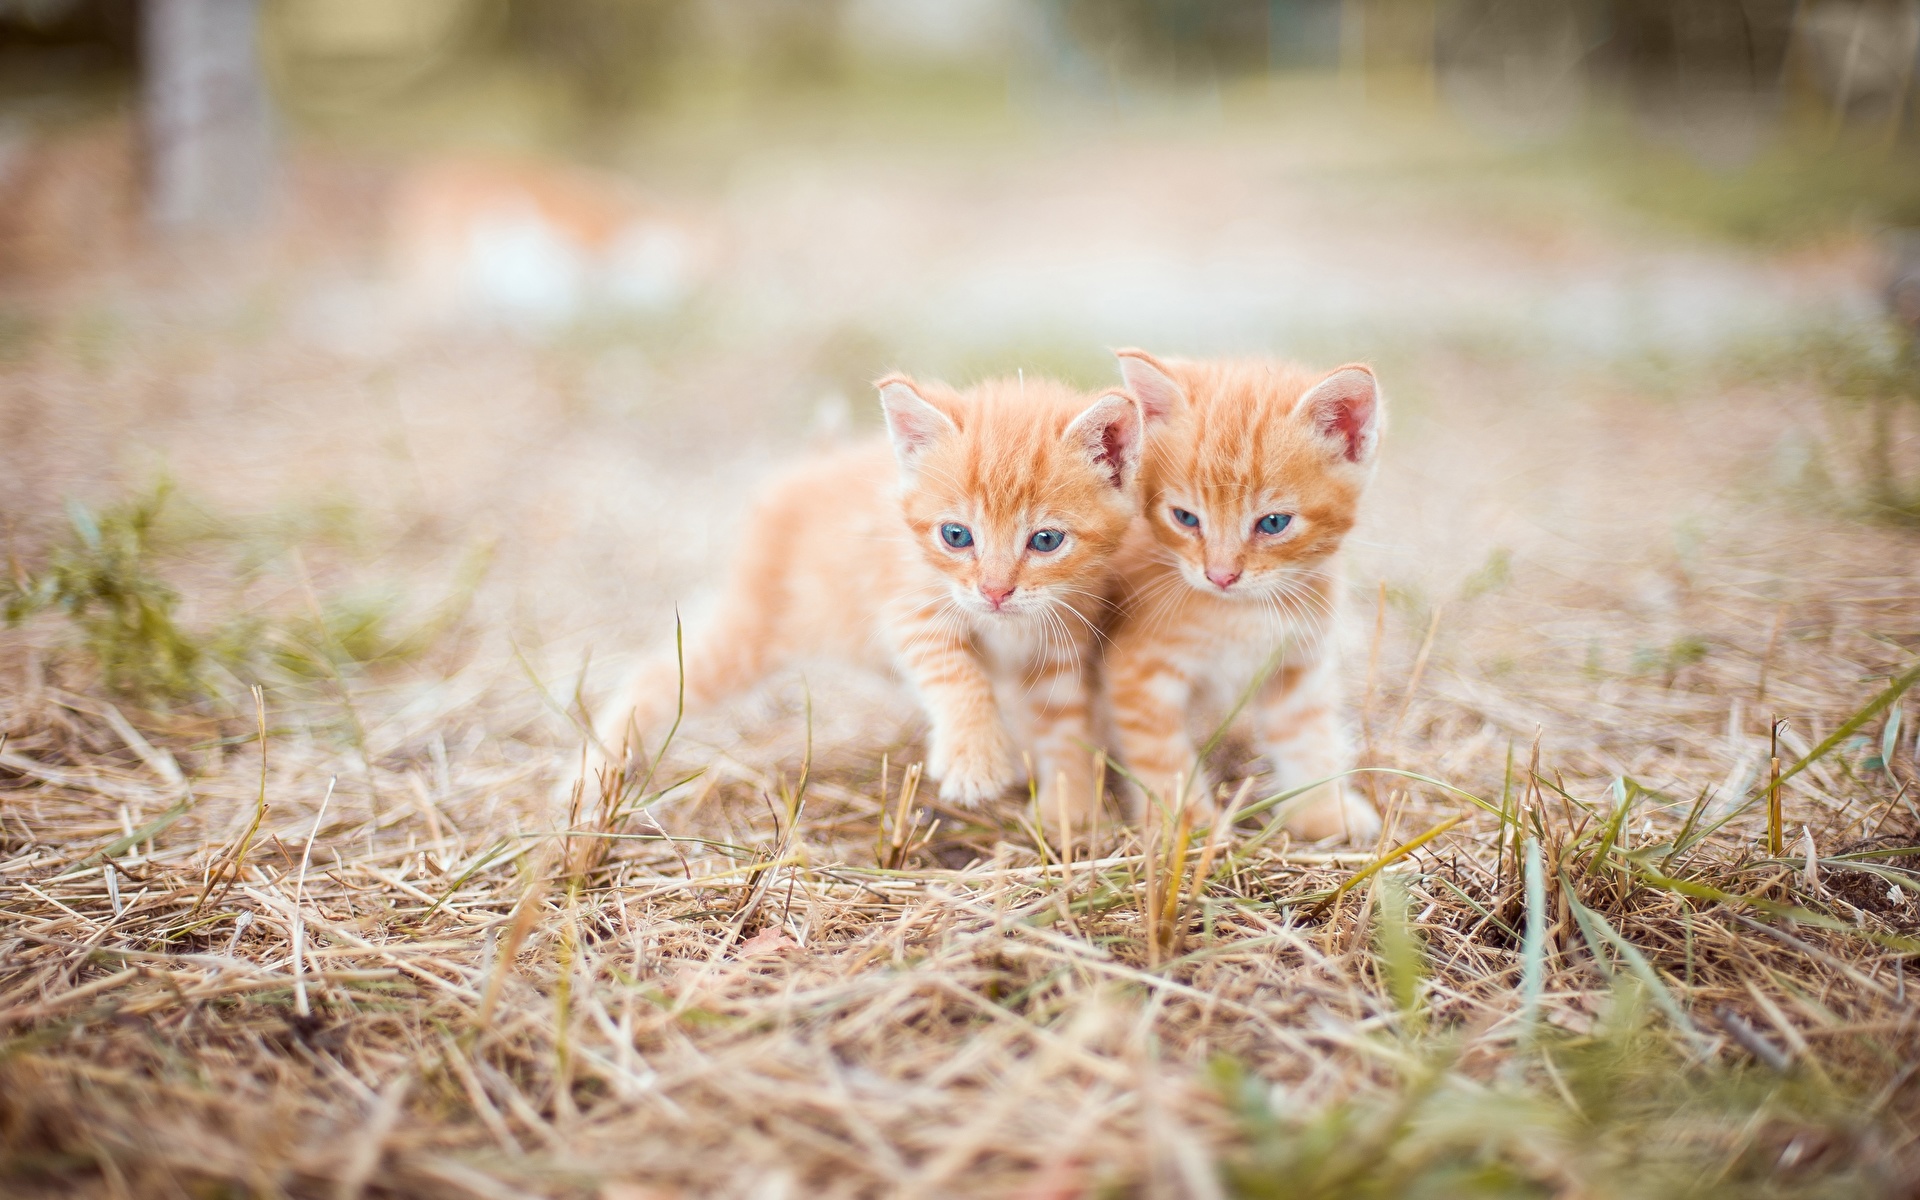 壁紙 19x10 飼い猫 子猫 ボケ写真 草 2 二つ オレンジ色動物 可愛い 動物 ダウンロード 写真